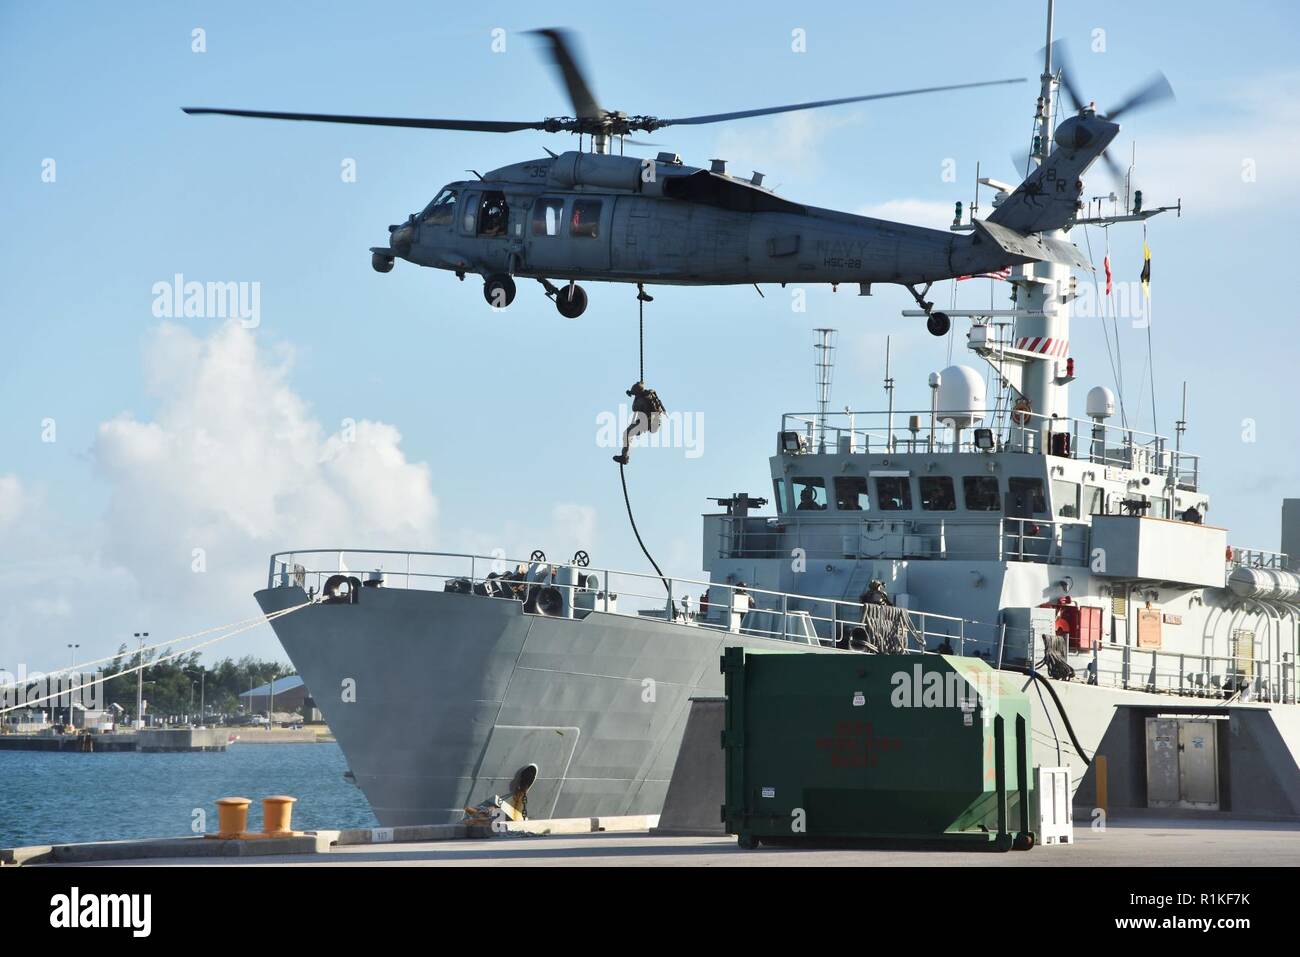 KEY WEST, Florida (Oct. 15, 2018) escuadrón de helicópteros de combate de mar HSC-28 "Dragón" ballenas desde Norfolk, Virginia, conducta fast-roping ejercicios con operadores especiales a bordo de buque de defensa costera canadiense HMCS Moncton en la Estación Aeronaval de Key West's Truman Harbor. HSC-28 está siendo objeto de una evaluación por helicópteros de combate de mar Atlántico durante escuela de armamento avanzado helicóptero Readiness Program (ARPA) formación. NAS Key West es una instalación de vanguardia para el combate aire-aire aviones de combate de todos los servicios militares y de clase mundial pierside ofrece apoyo a buques de guerra estadounidenses y extranjeros. Foto de stock